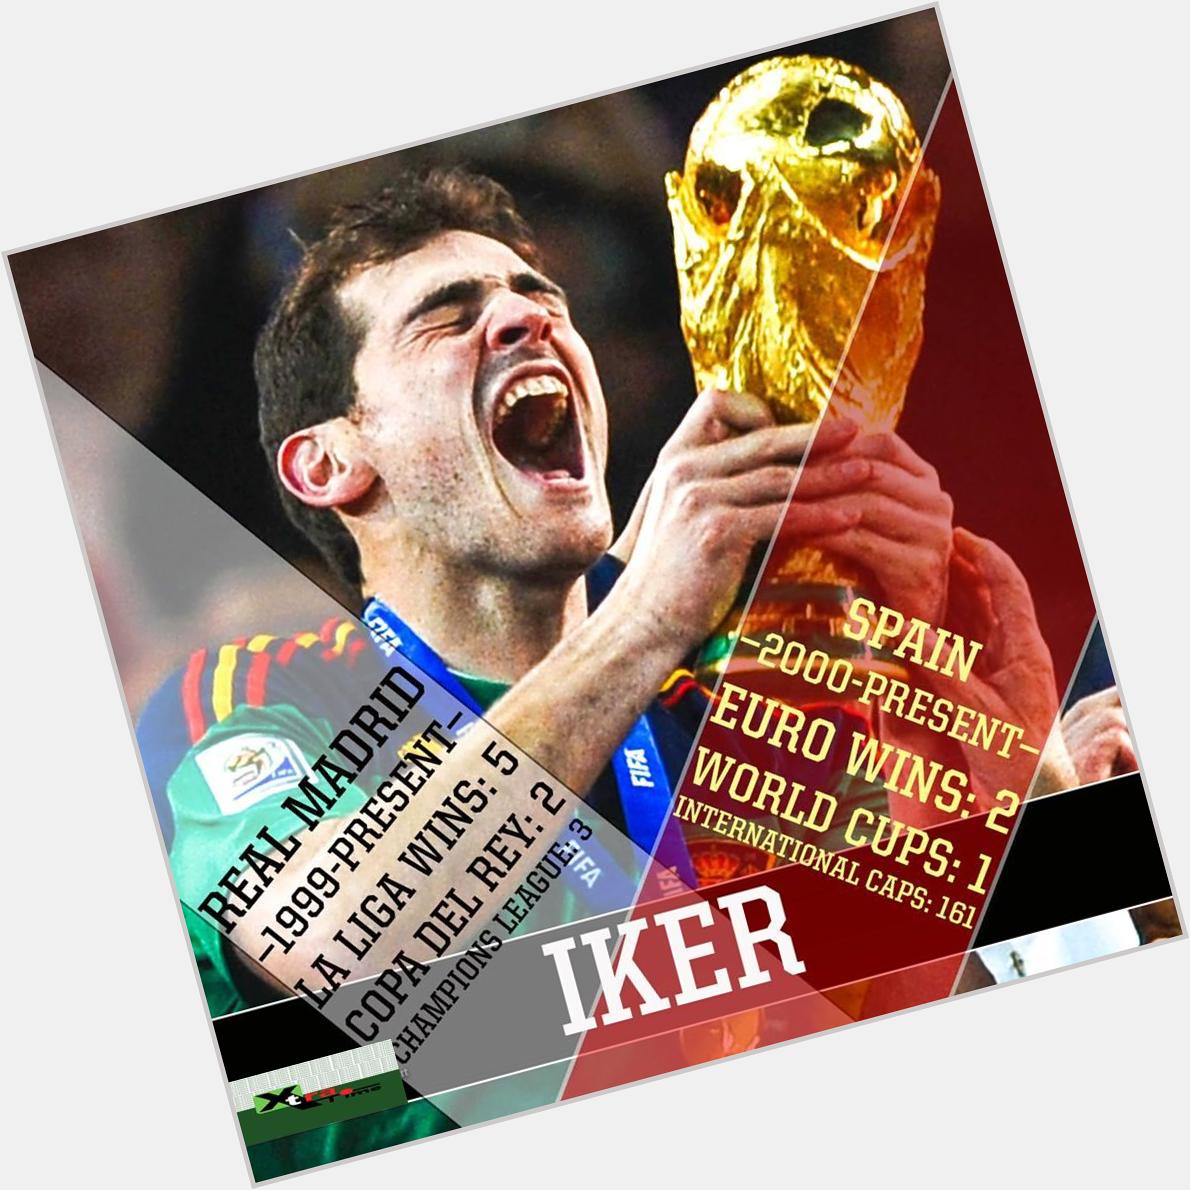 Happy Birthday, Iker Casillas!

34 years
1 World Cup
2 Euro
2 Copa del Rey
3 Champions League
5 La Liga

Legend. 